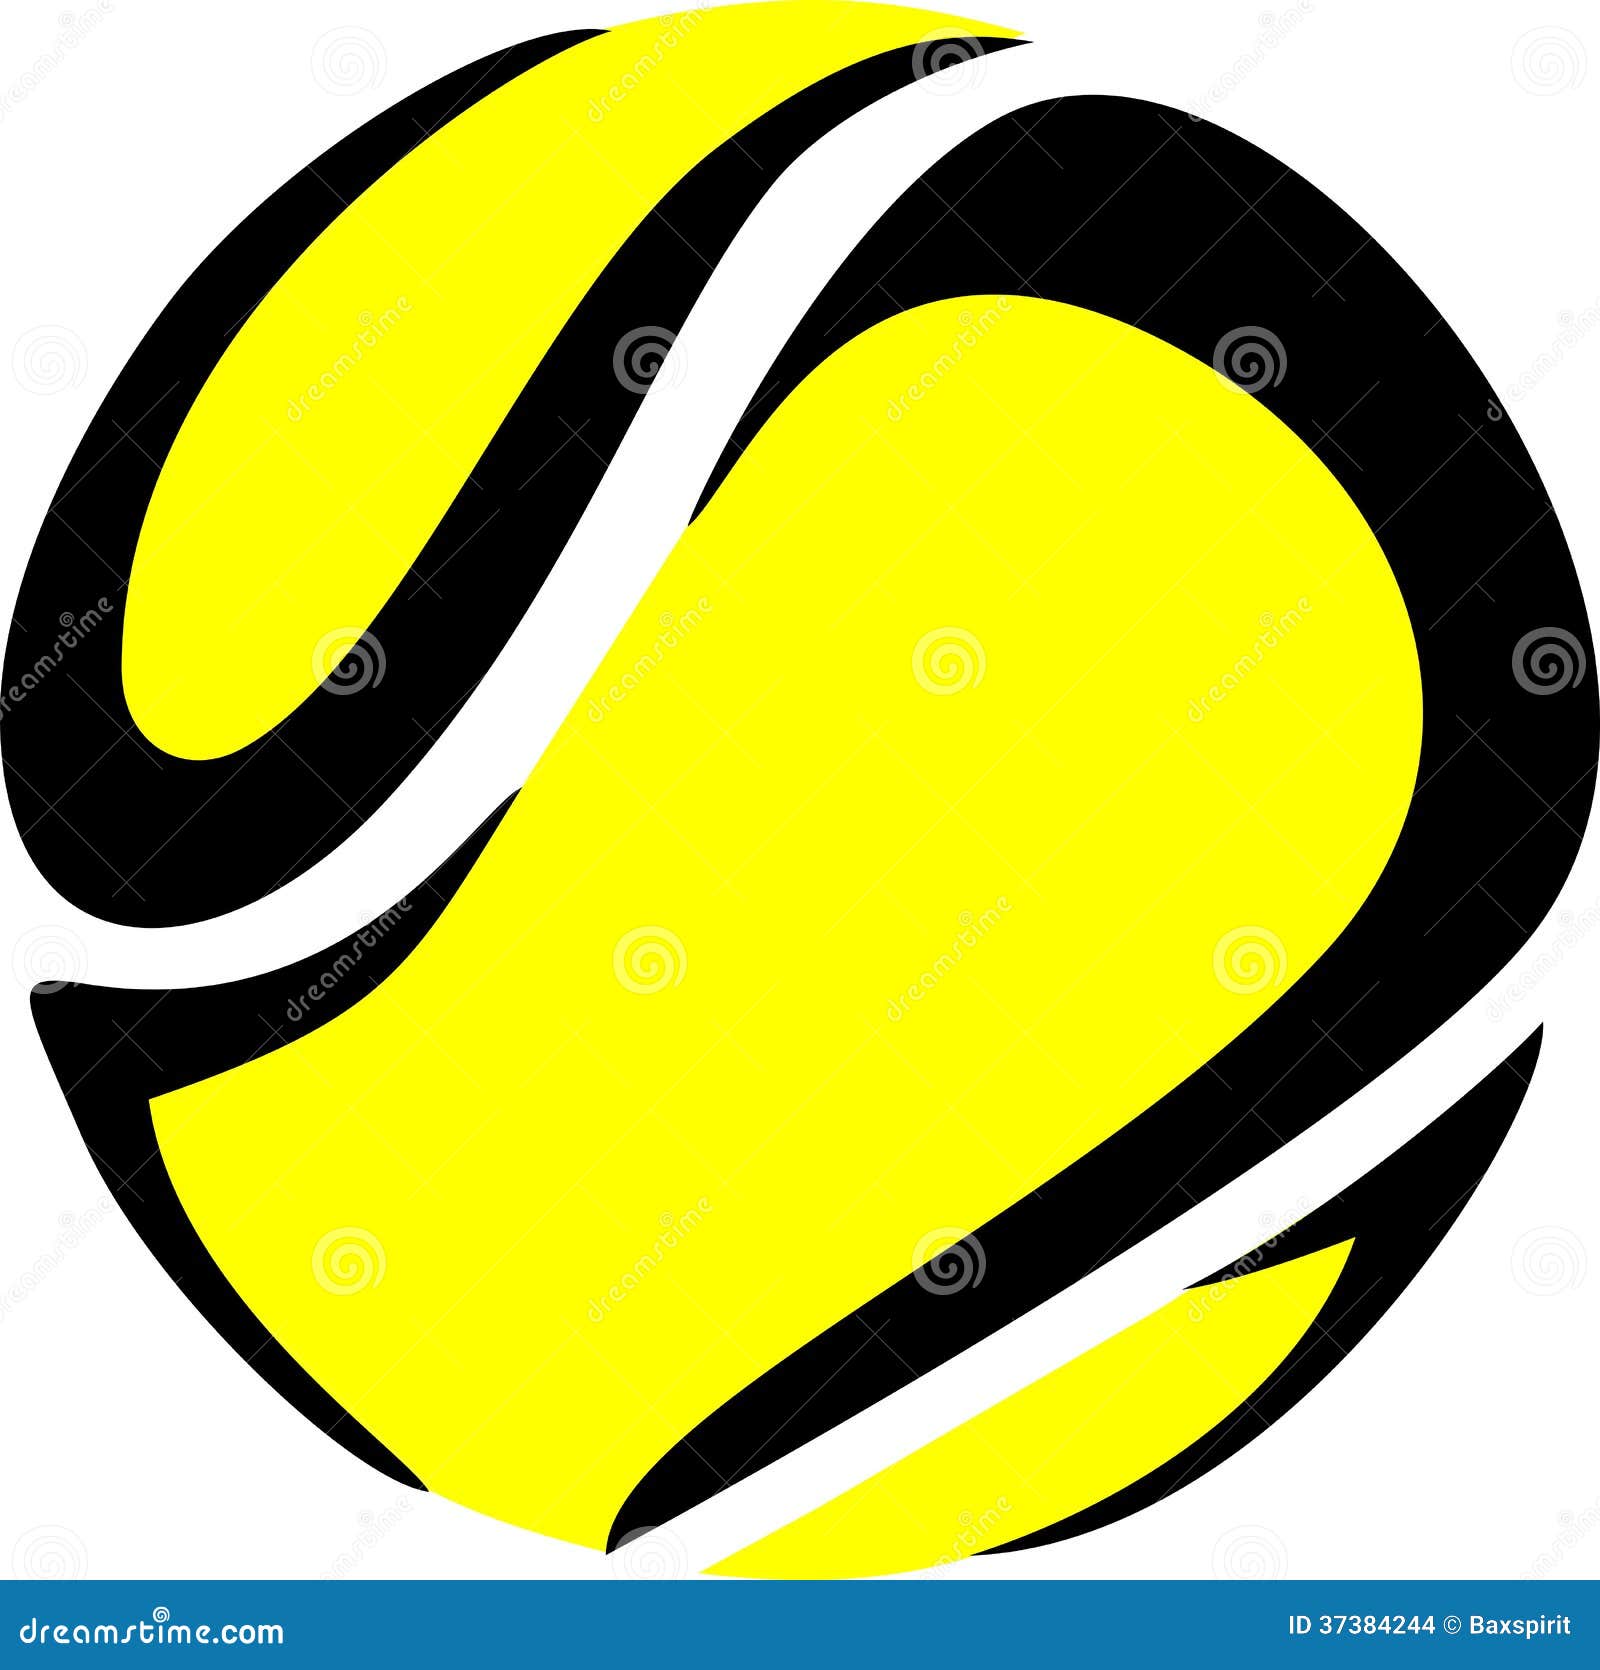 Vetores de Vetor De Bola De Tênis Realista Clássico Rodada Bola Amarela  Símbolo De Jogo De Desporto Ilustração e mais imagens de Amarelo - iStock